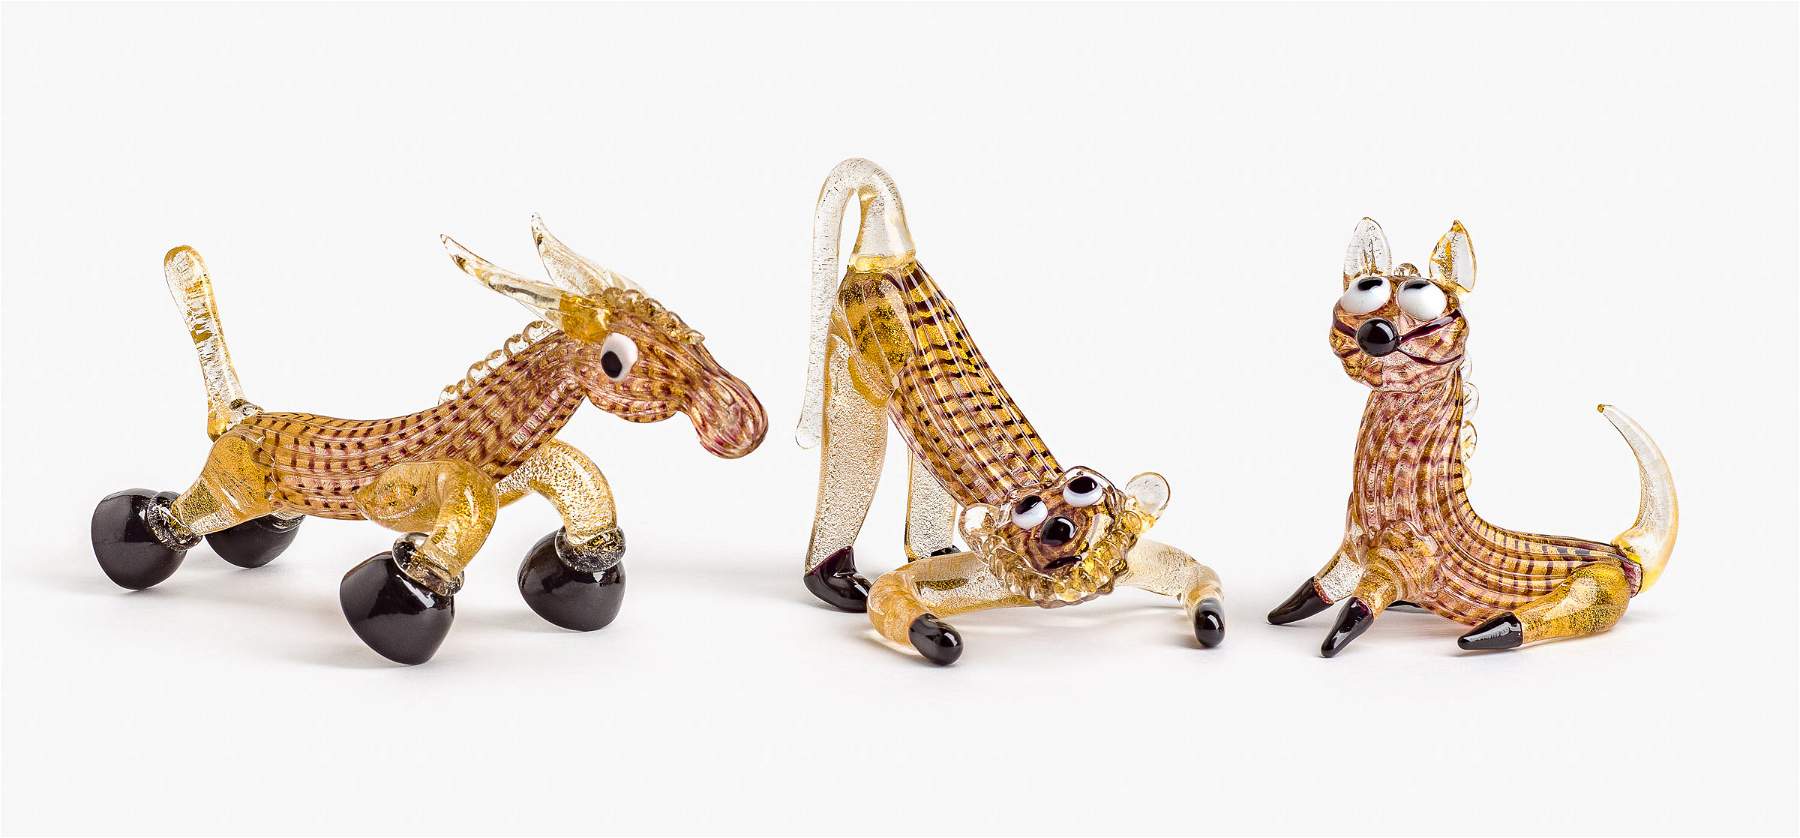 La historia de los animales de cristal de Murano se expone en Venecia, con una importante colección